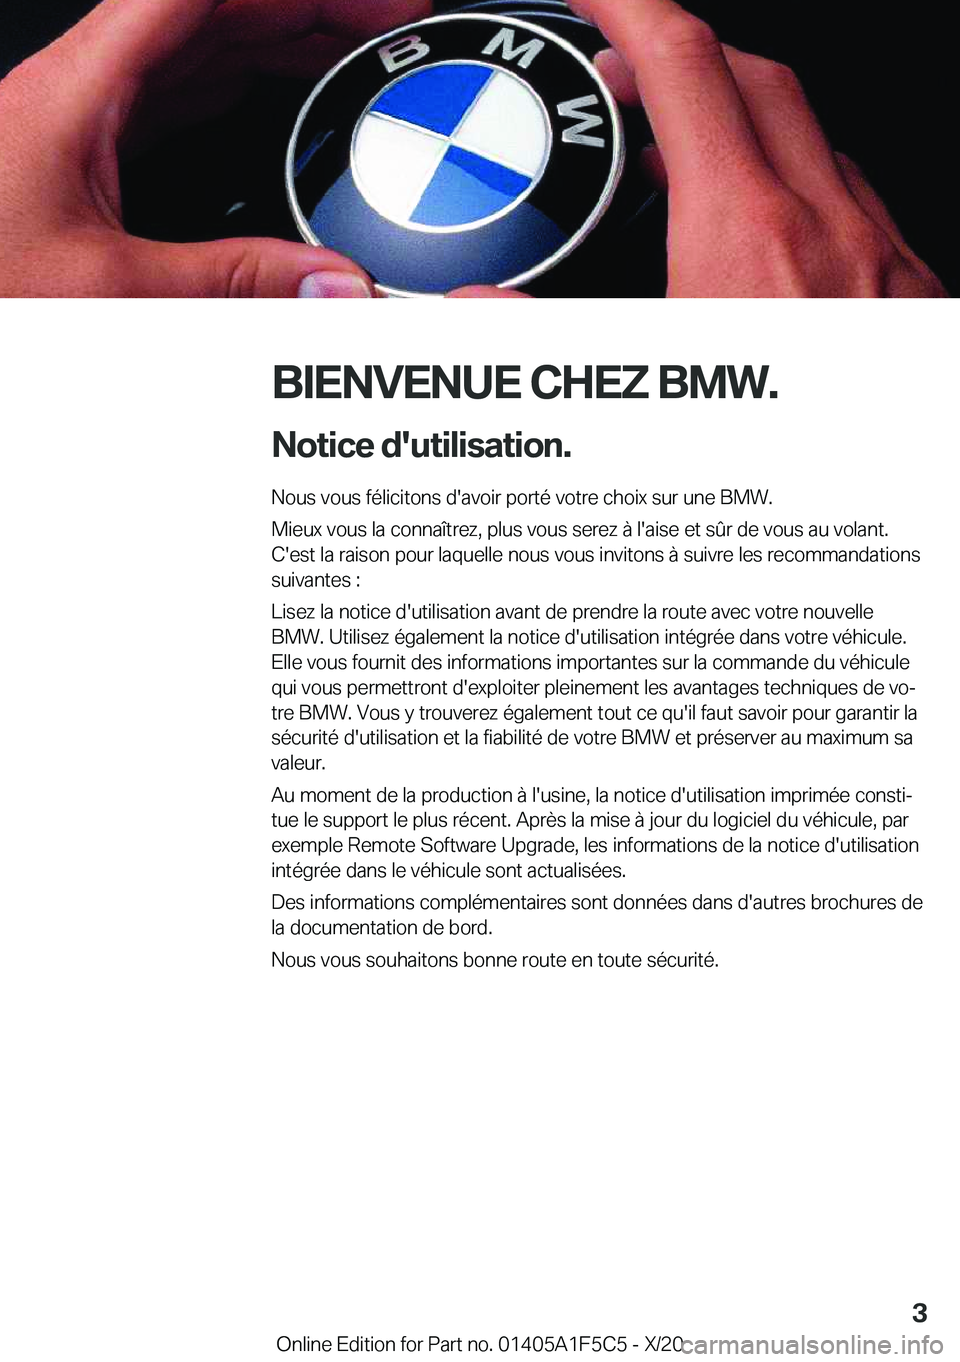 BMW X4 M 2021  Notices Demploi (in French) �B�I�E�N�V�E�N�U�E��C�H�E�Z��B�M�W�.�N�o�t�i�c�e��d�'�u�t�i�l�i�s�a�t�i�o�n�.
�N�o�u�s��v�o�u�s��f�é�l�i�c�i�t�o�n�s��d�'�a�v�o�i�r��p�o�r�t�é��v�o�t�r�e��c�h�o�i�x��s�u�r��u�n�e�